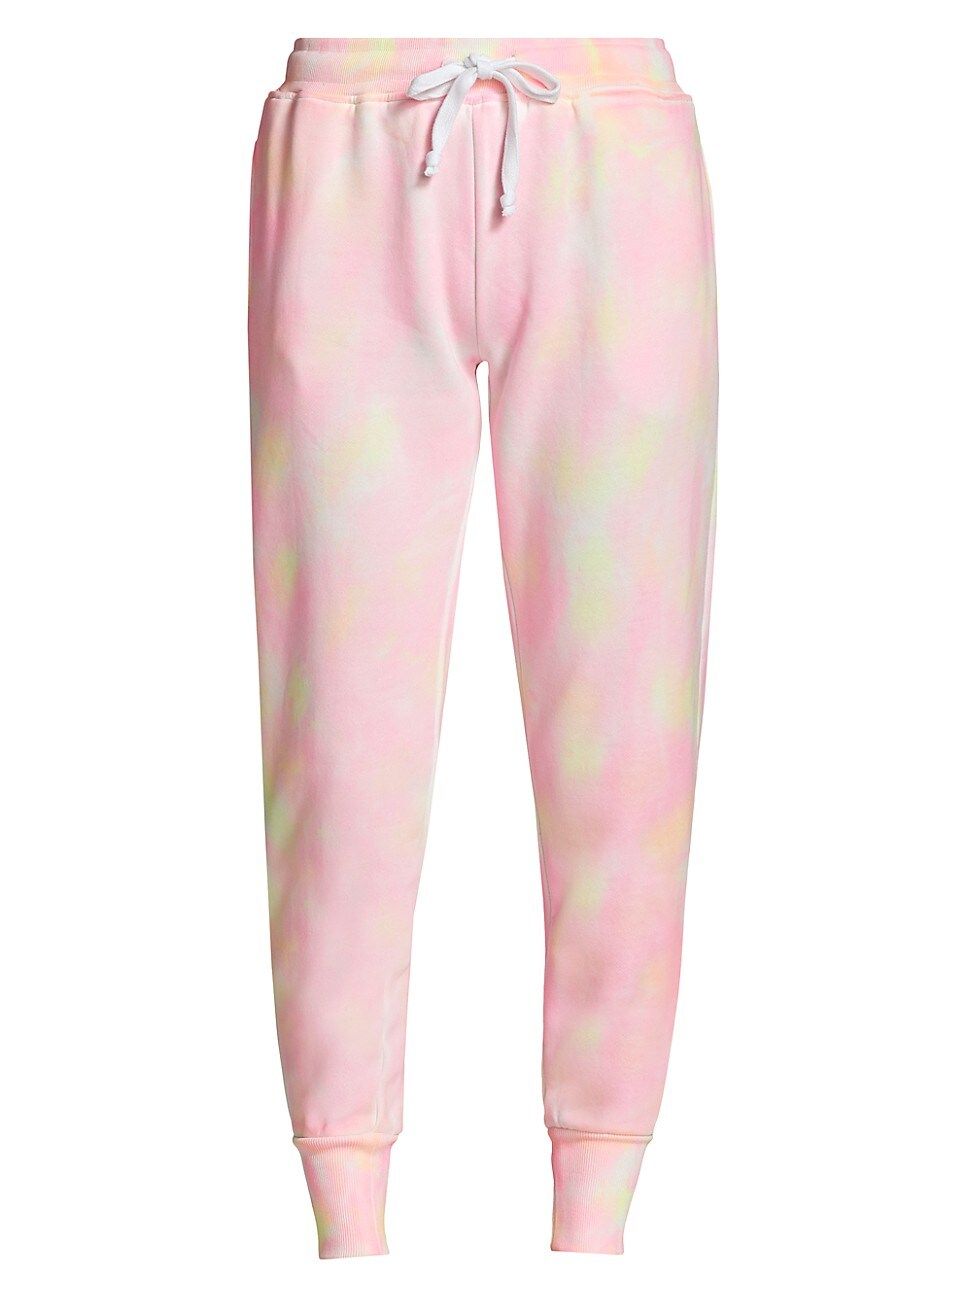 Generation Love Women's Lulu Tie-Dye Sweatpants - Neon - Size Small | Saks Fifth Avenue